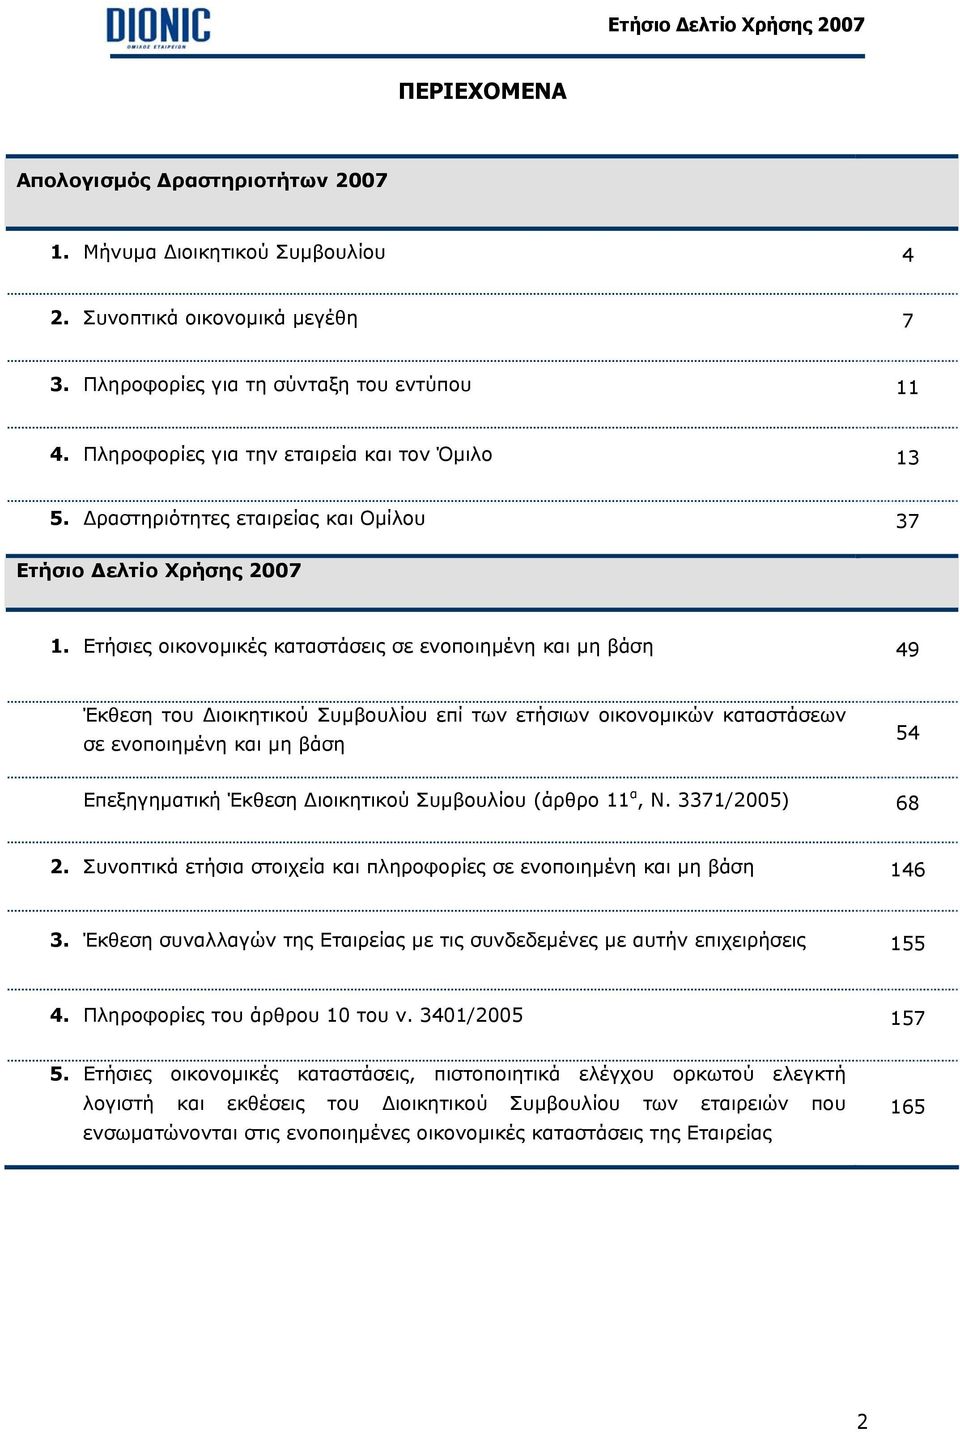 Ετήσιες οικονοµικές καταστάσεις σε ενοποιηµένη και µη βάση 49 Έκθεση του ιοικητικού Συµβουλίου επί των ετήσιων οικονοµικών καταστάσεων σε ενοποιηµένη και µη βάση 54 Επεξηγηµατική Έκθεση ιοικητικού